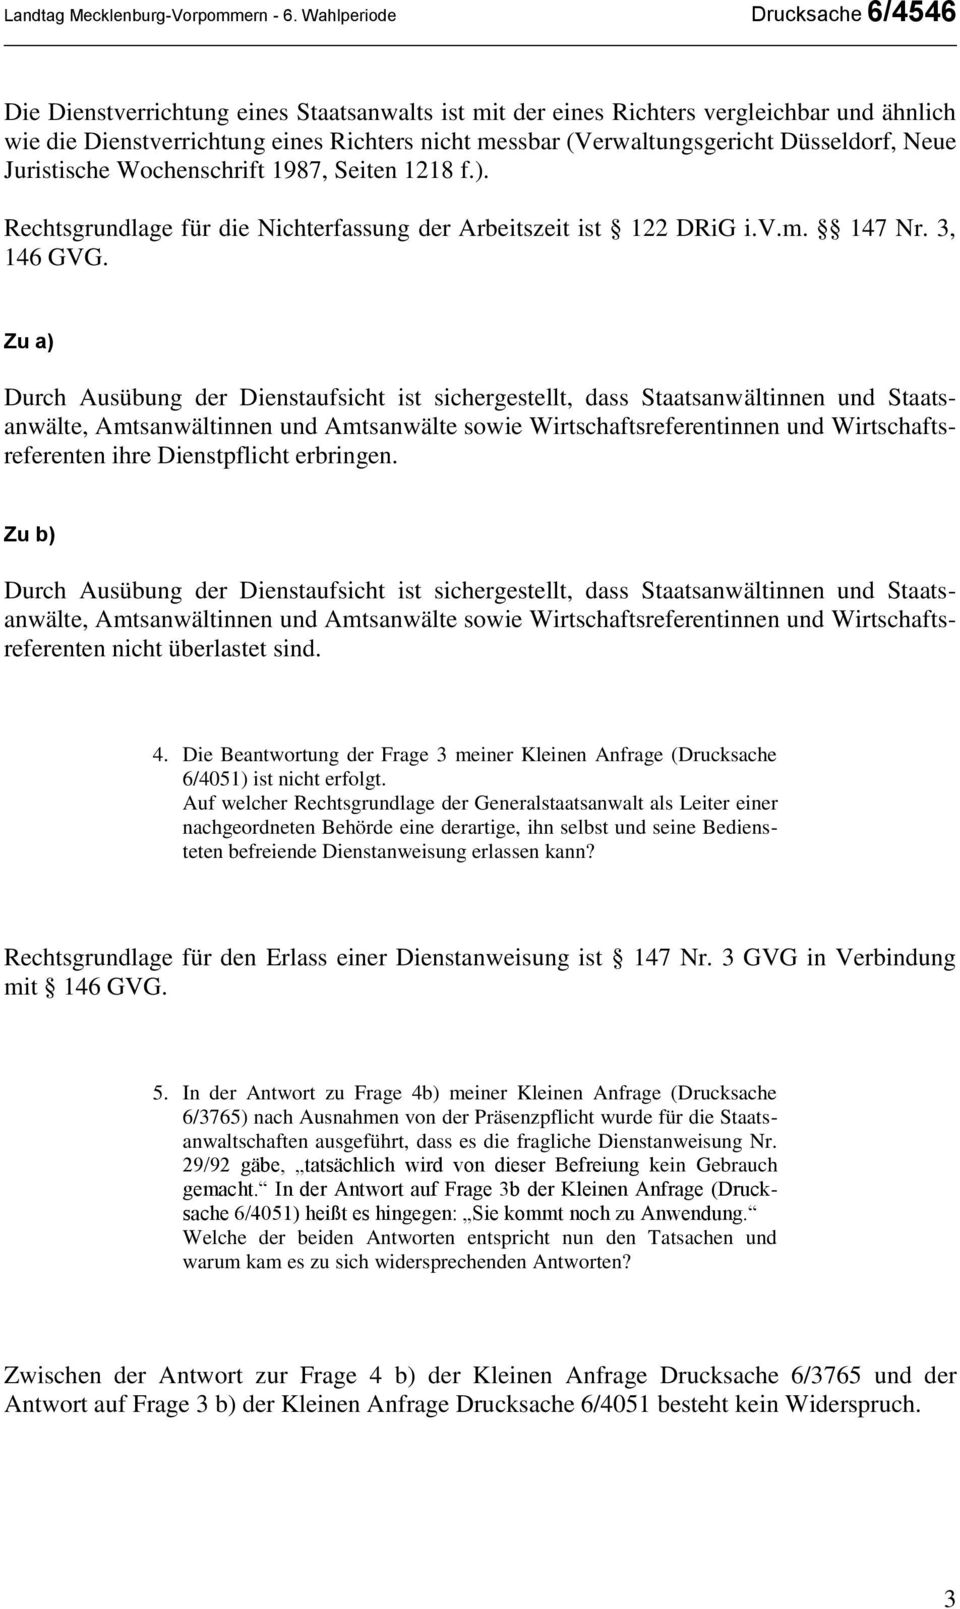 Düsseldorf, Neue Juristische Wochenschrift 1987, Seiten 1218 f.). Rechtsgrundlage für die Nichterfassung der Arbeitszeit ist 122 DRiG i.v.m. 147 Nr. 3, 146 GVG.